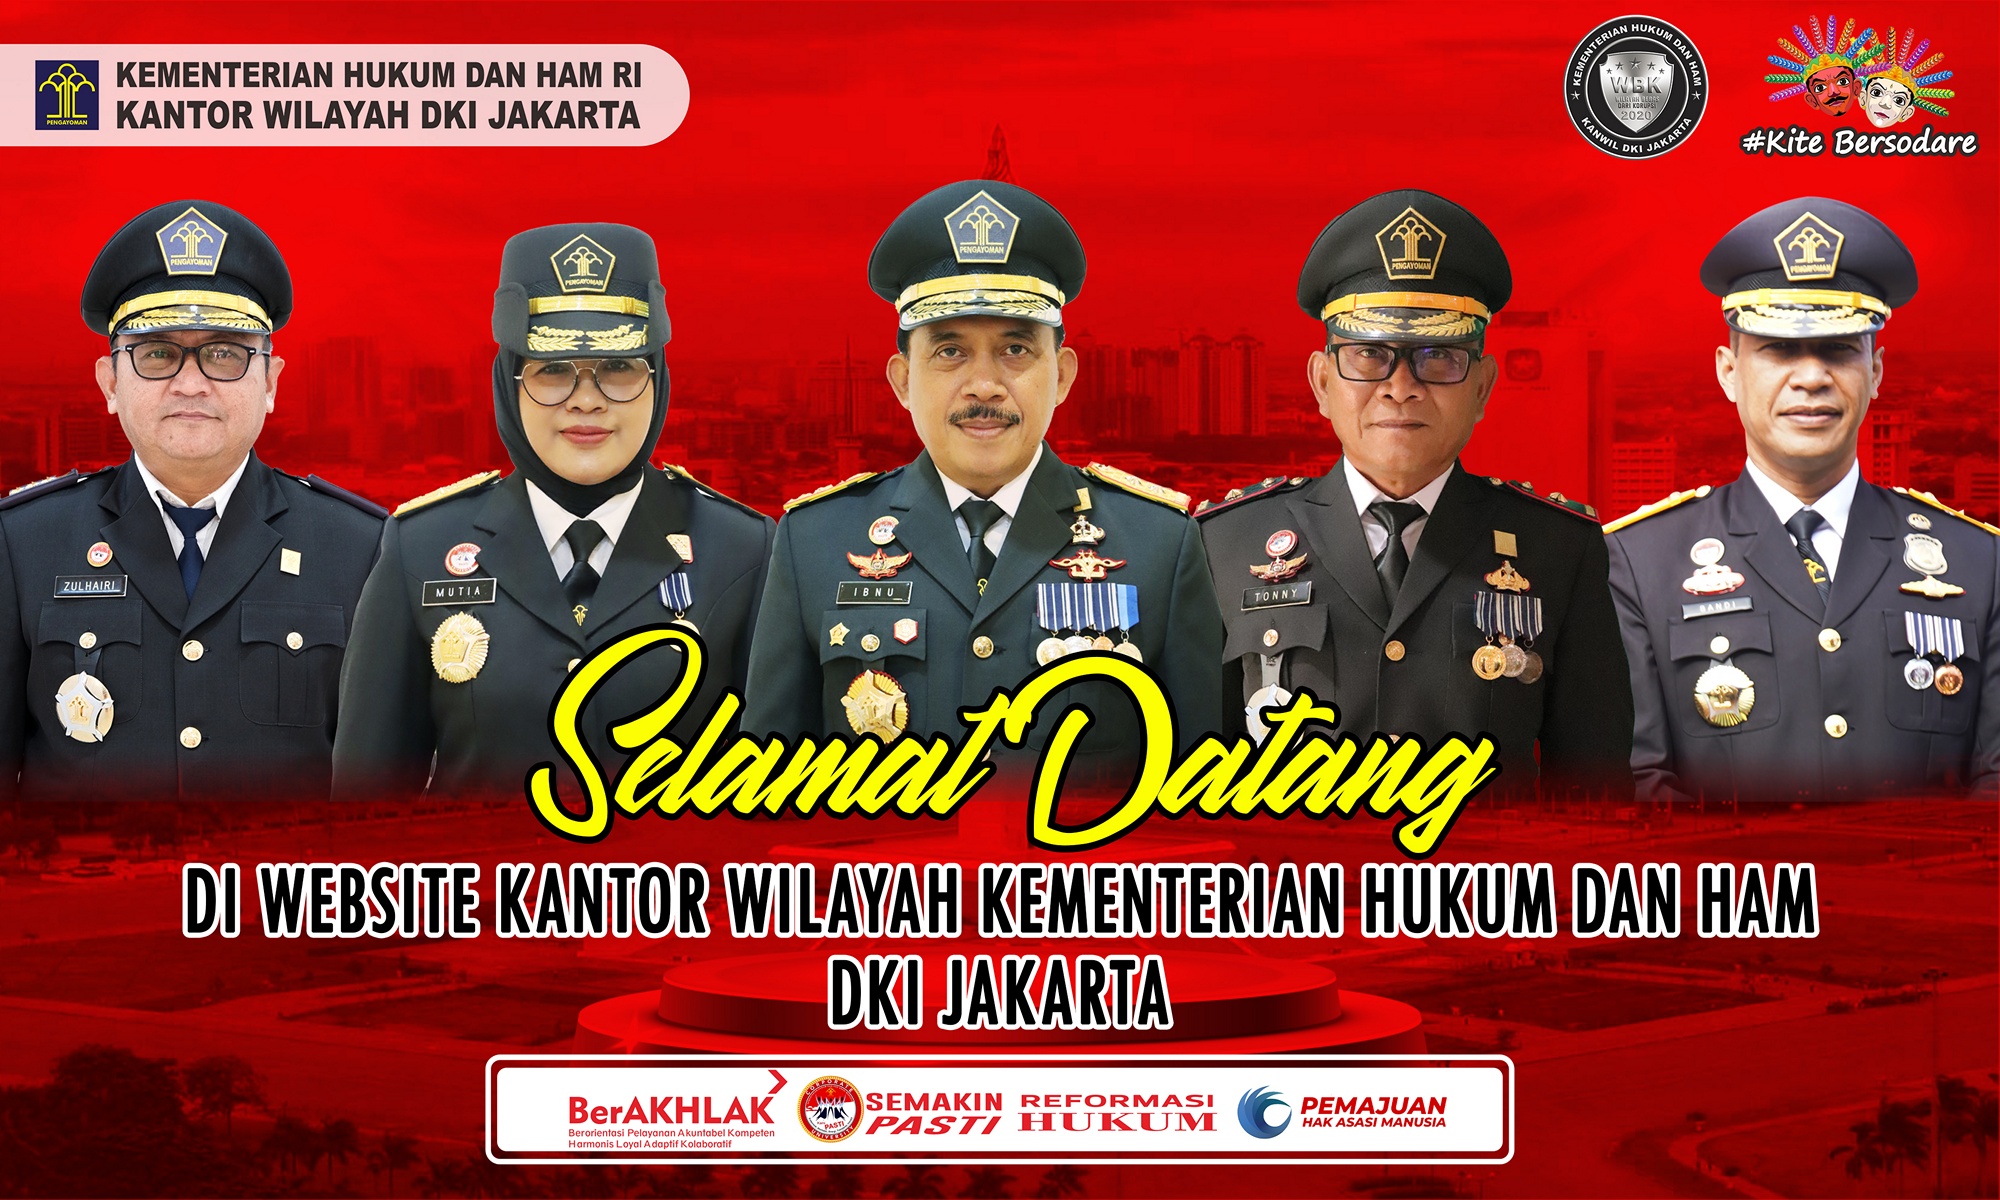 Selamat Datang Di Website Kanwil Kemenkumham DKI Jakarta